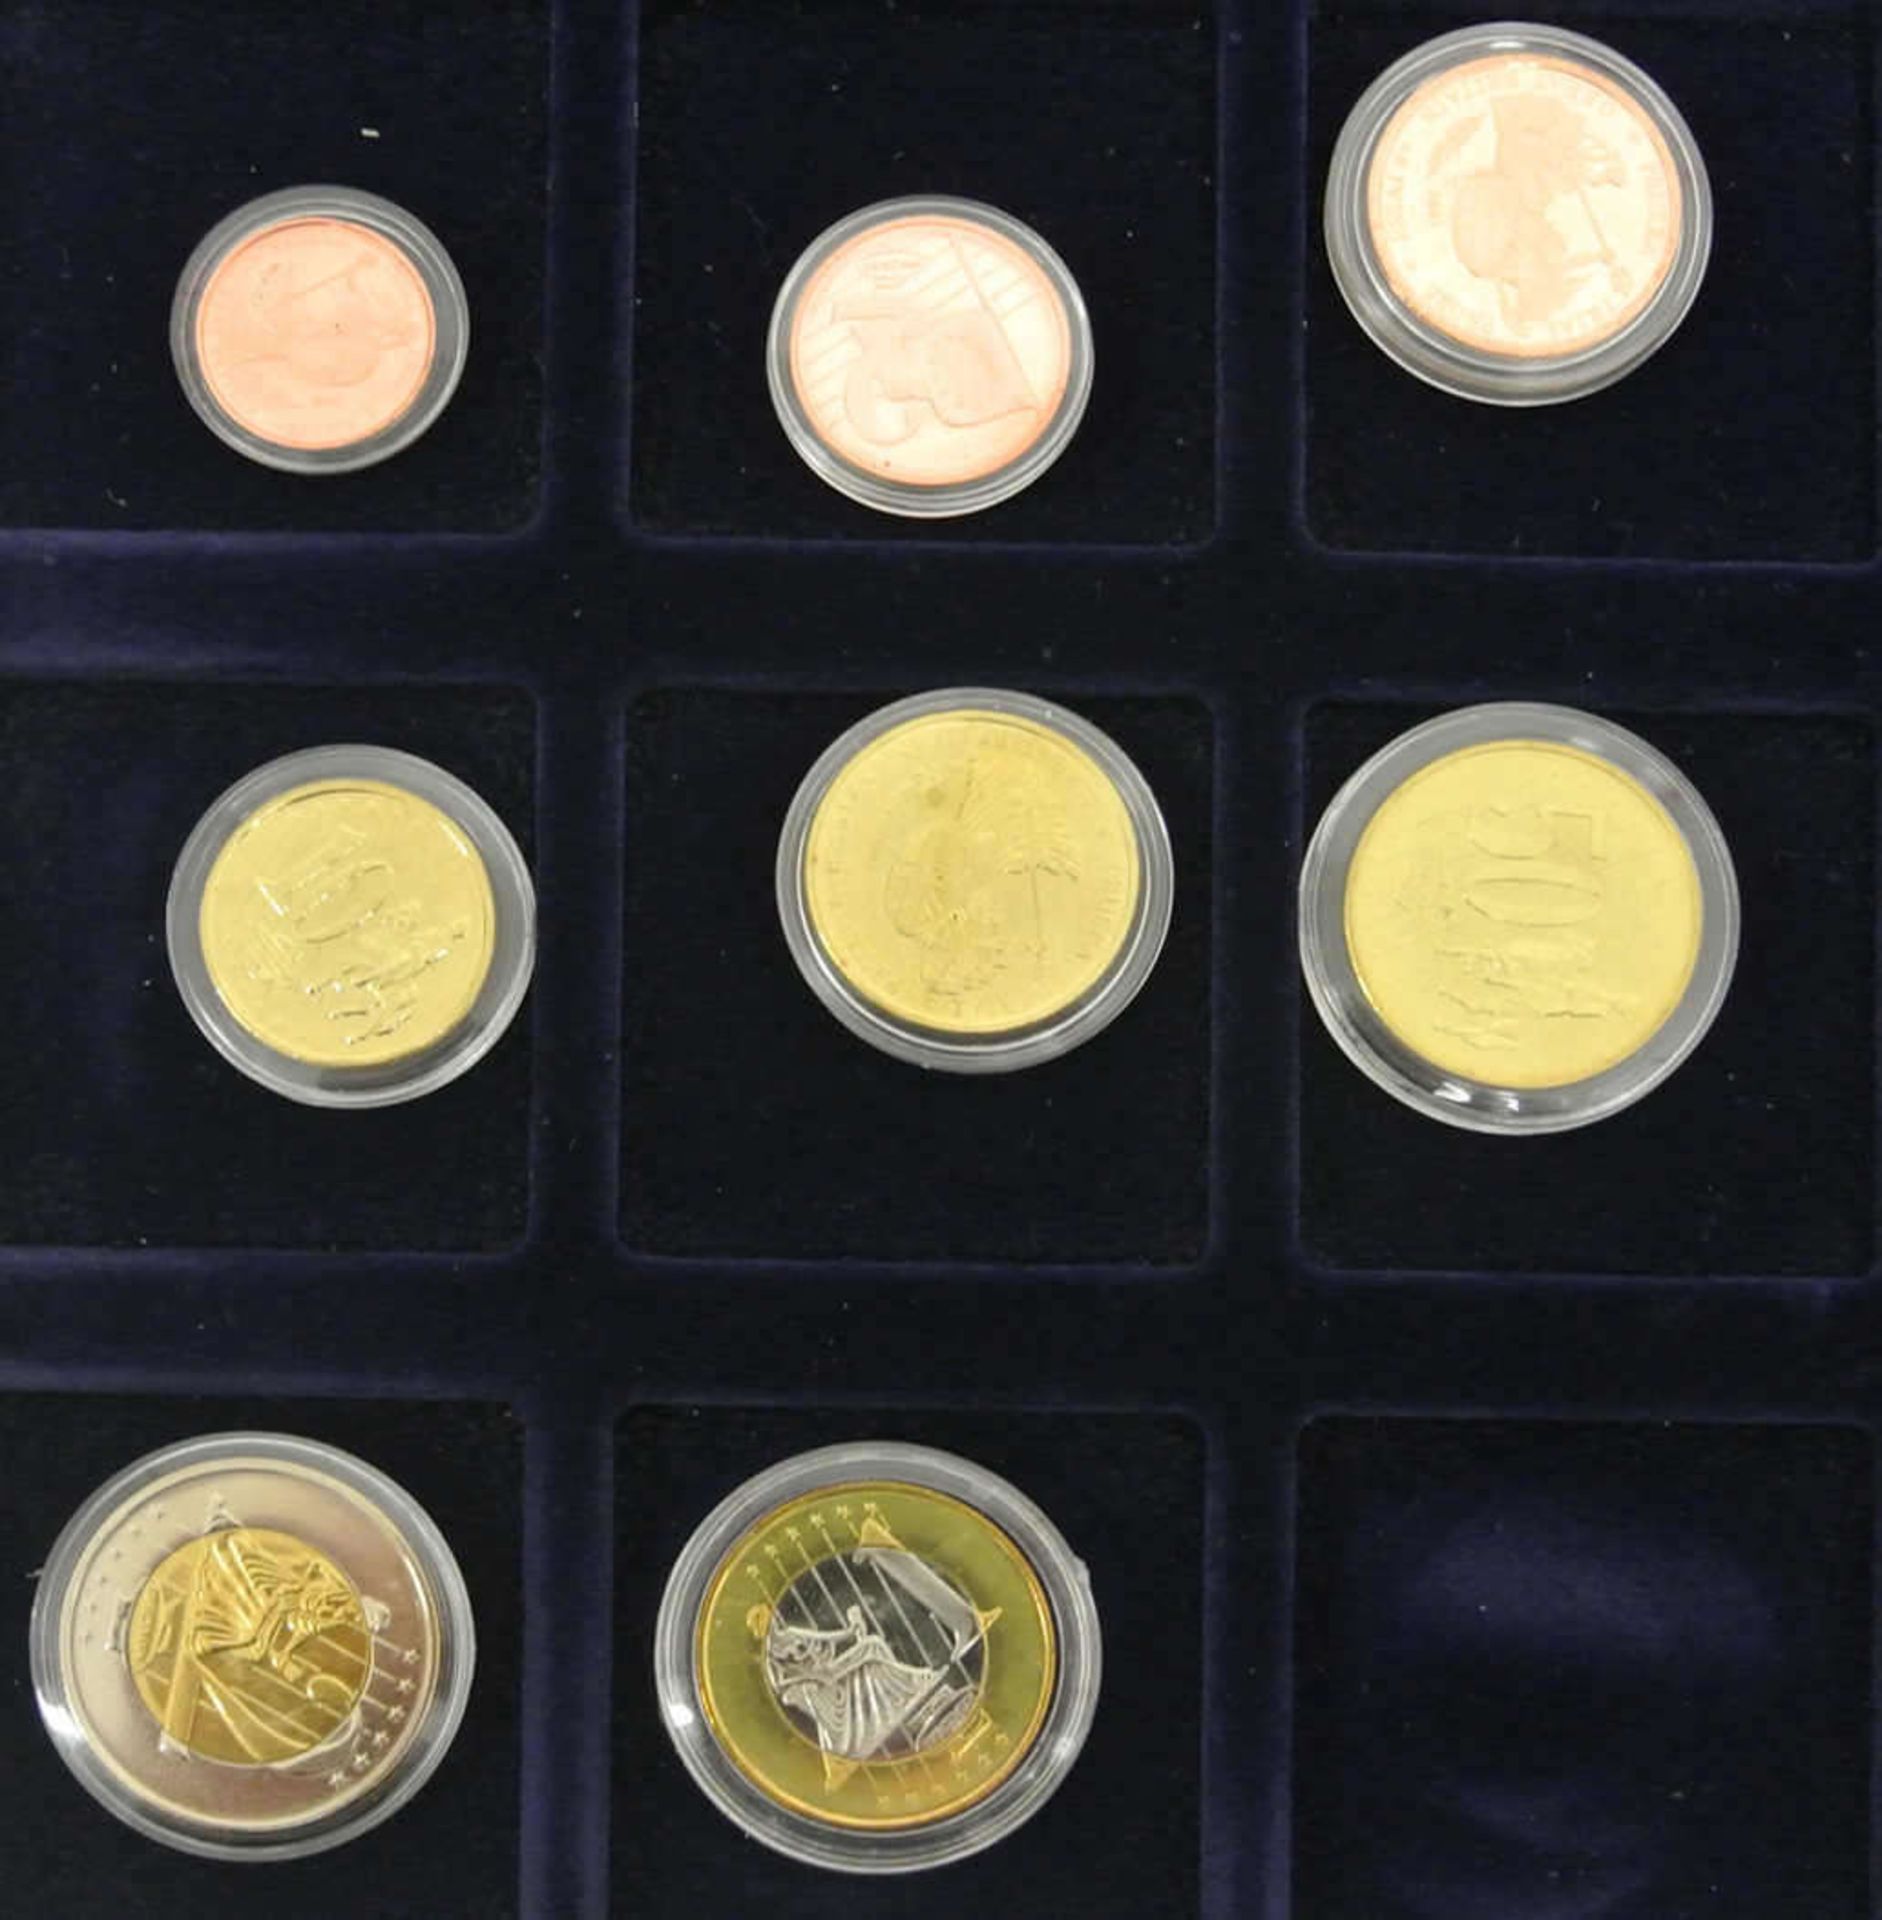 Specimen Großbritannien, Euro-Münzsatz 2003 in einer Holzbox Specimen Great Britain, Euro coin set - Bild 2 aus 2